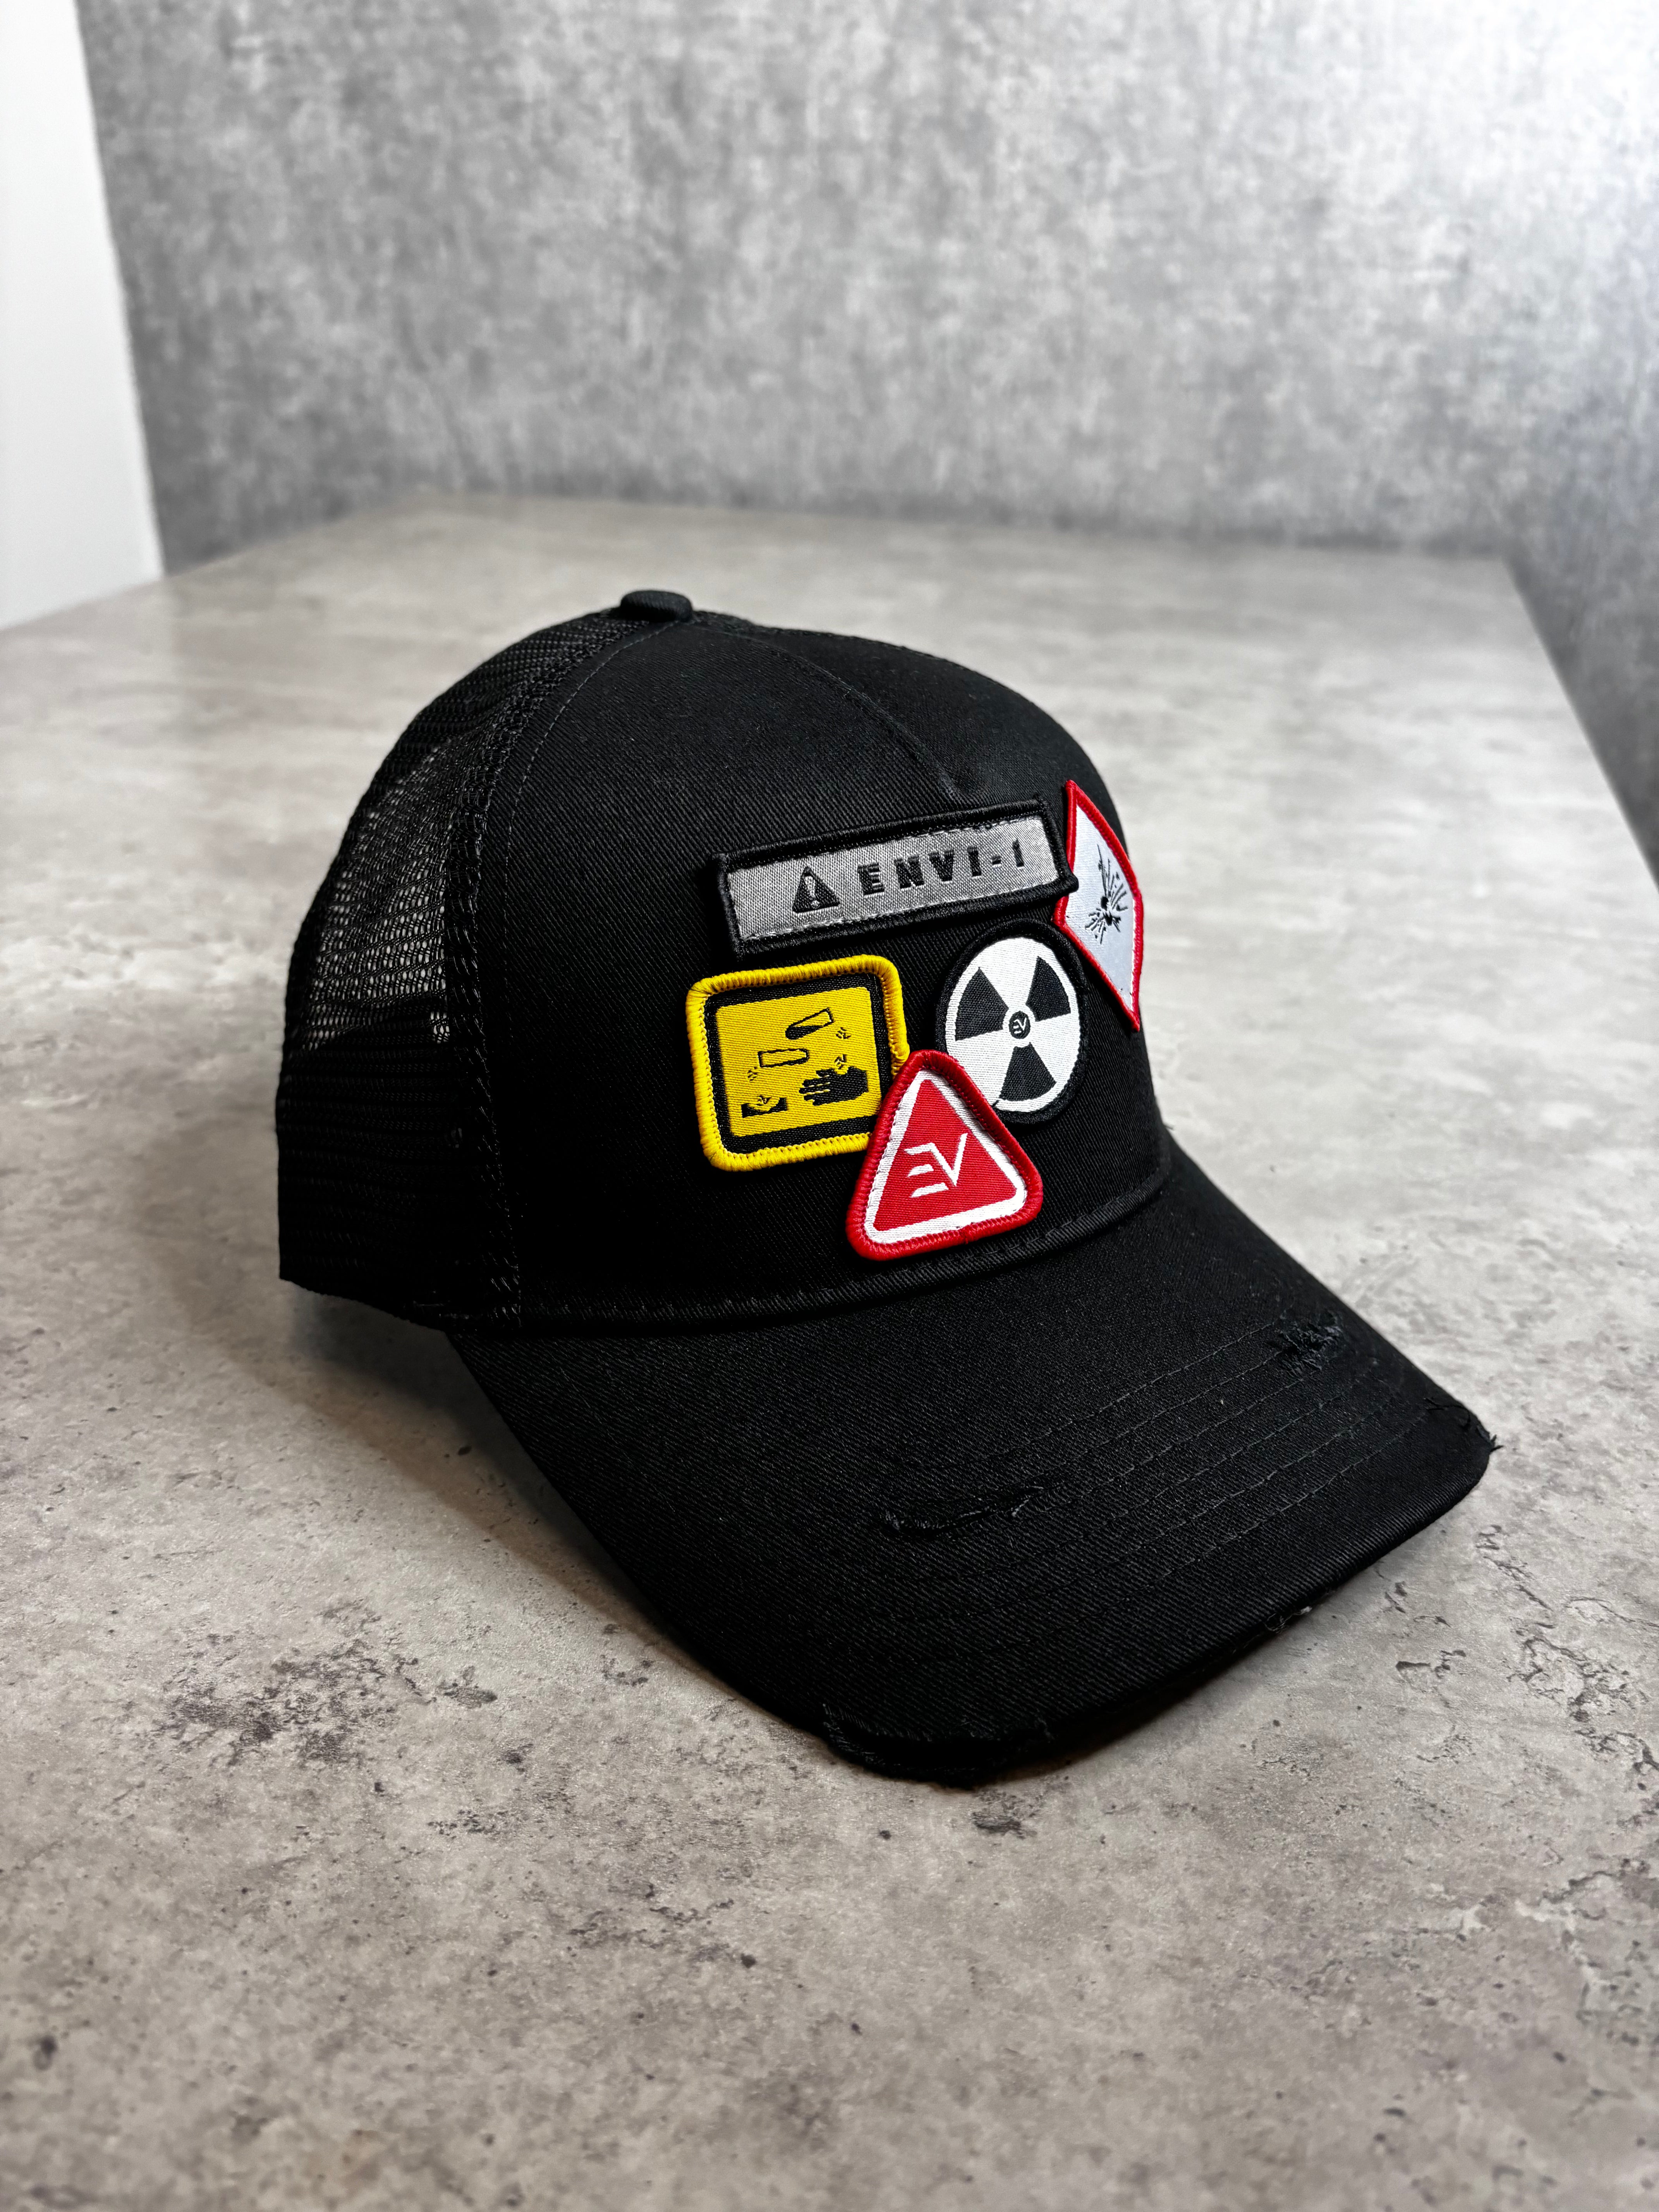 ENVI1 Trucker “Hazard” Hat